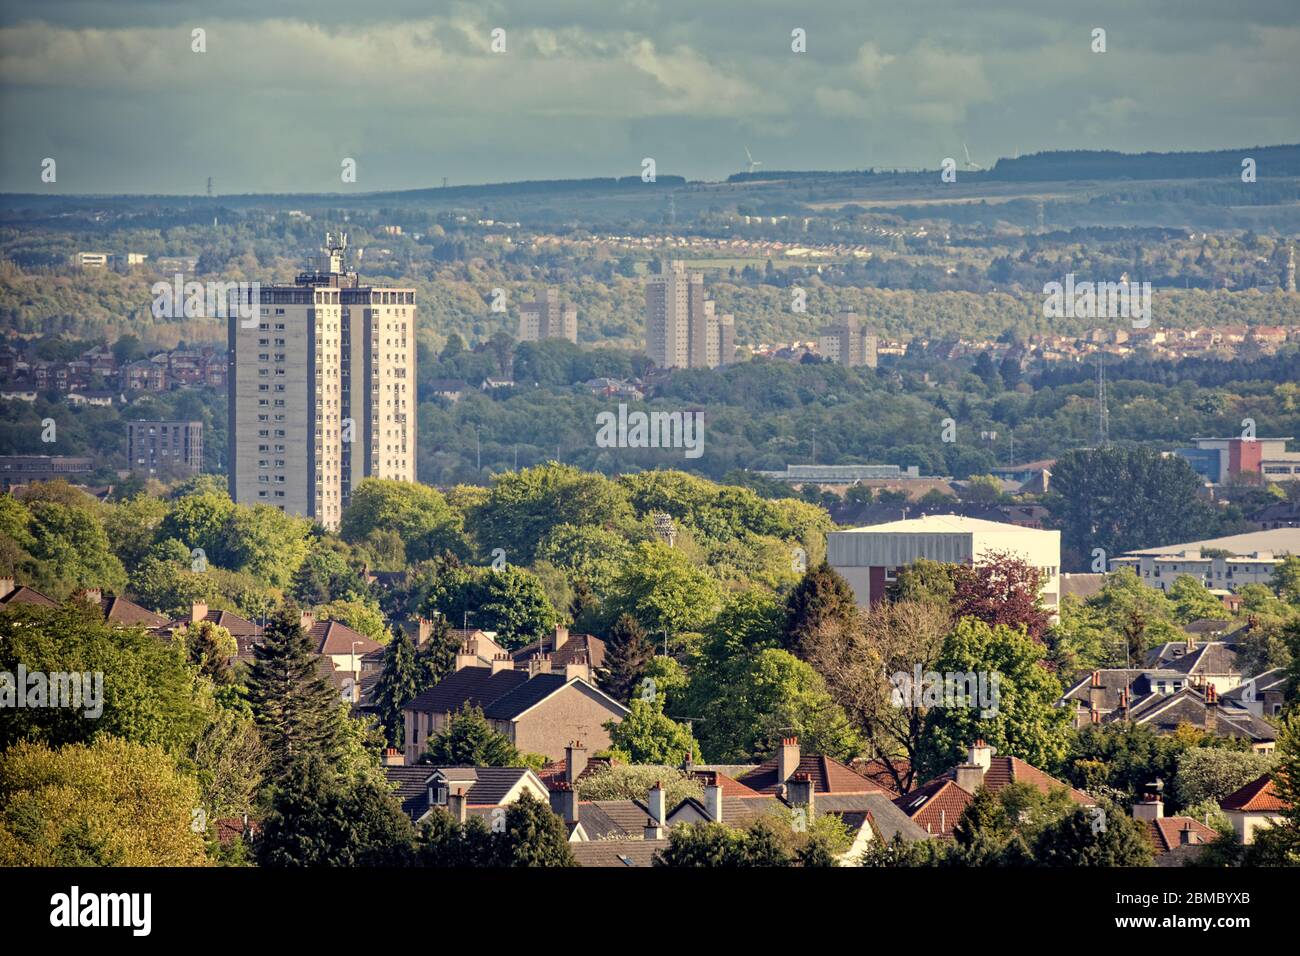 Glasgow, Scozia, UK 8 maggio 2020: Regno Unito Meteo: La giornata calda ha visto il sole sul sud della città, mentre il verde sembrava lussureggiante nei bassi livelli di inquinamento. Traghetto Copyrite Gerard/Alamy Live News Foto Stock